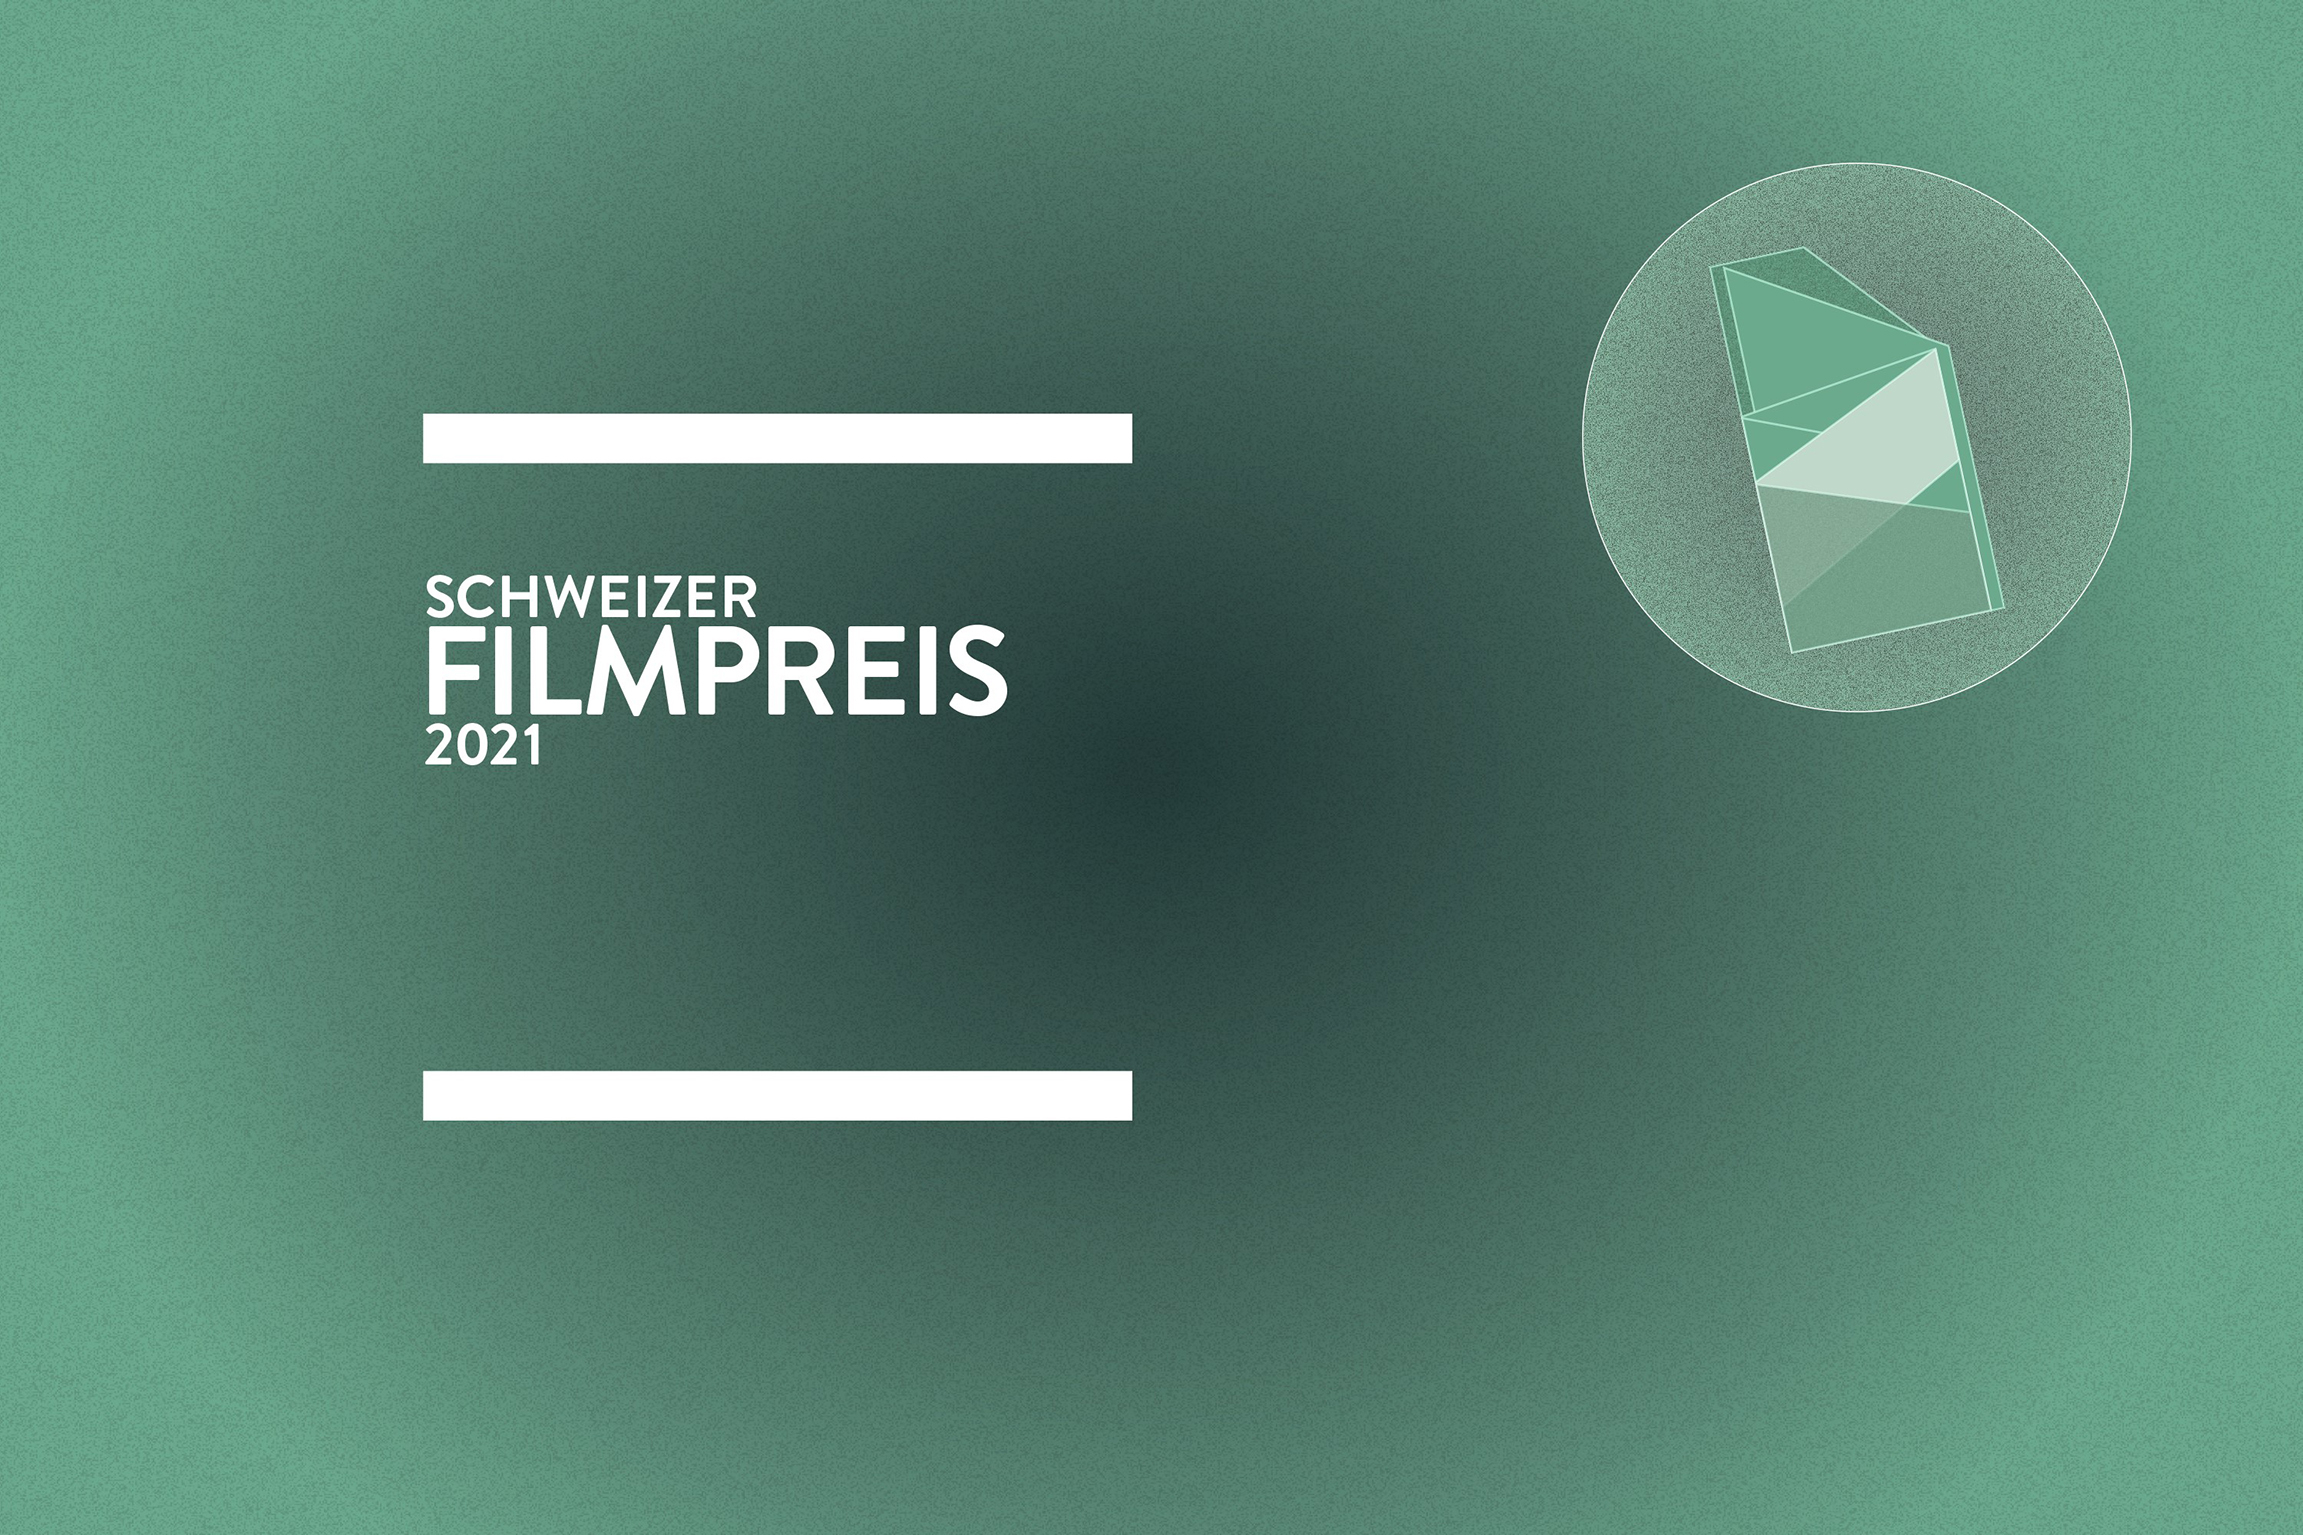 Schweizer Filmpreis 2021 Keyvisual